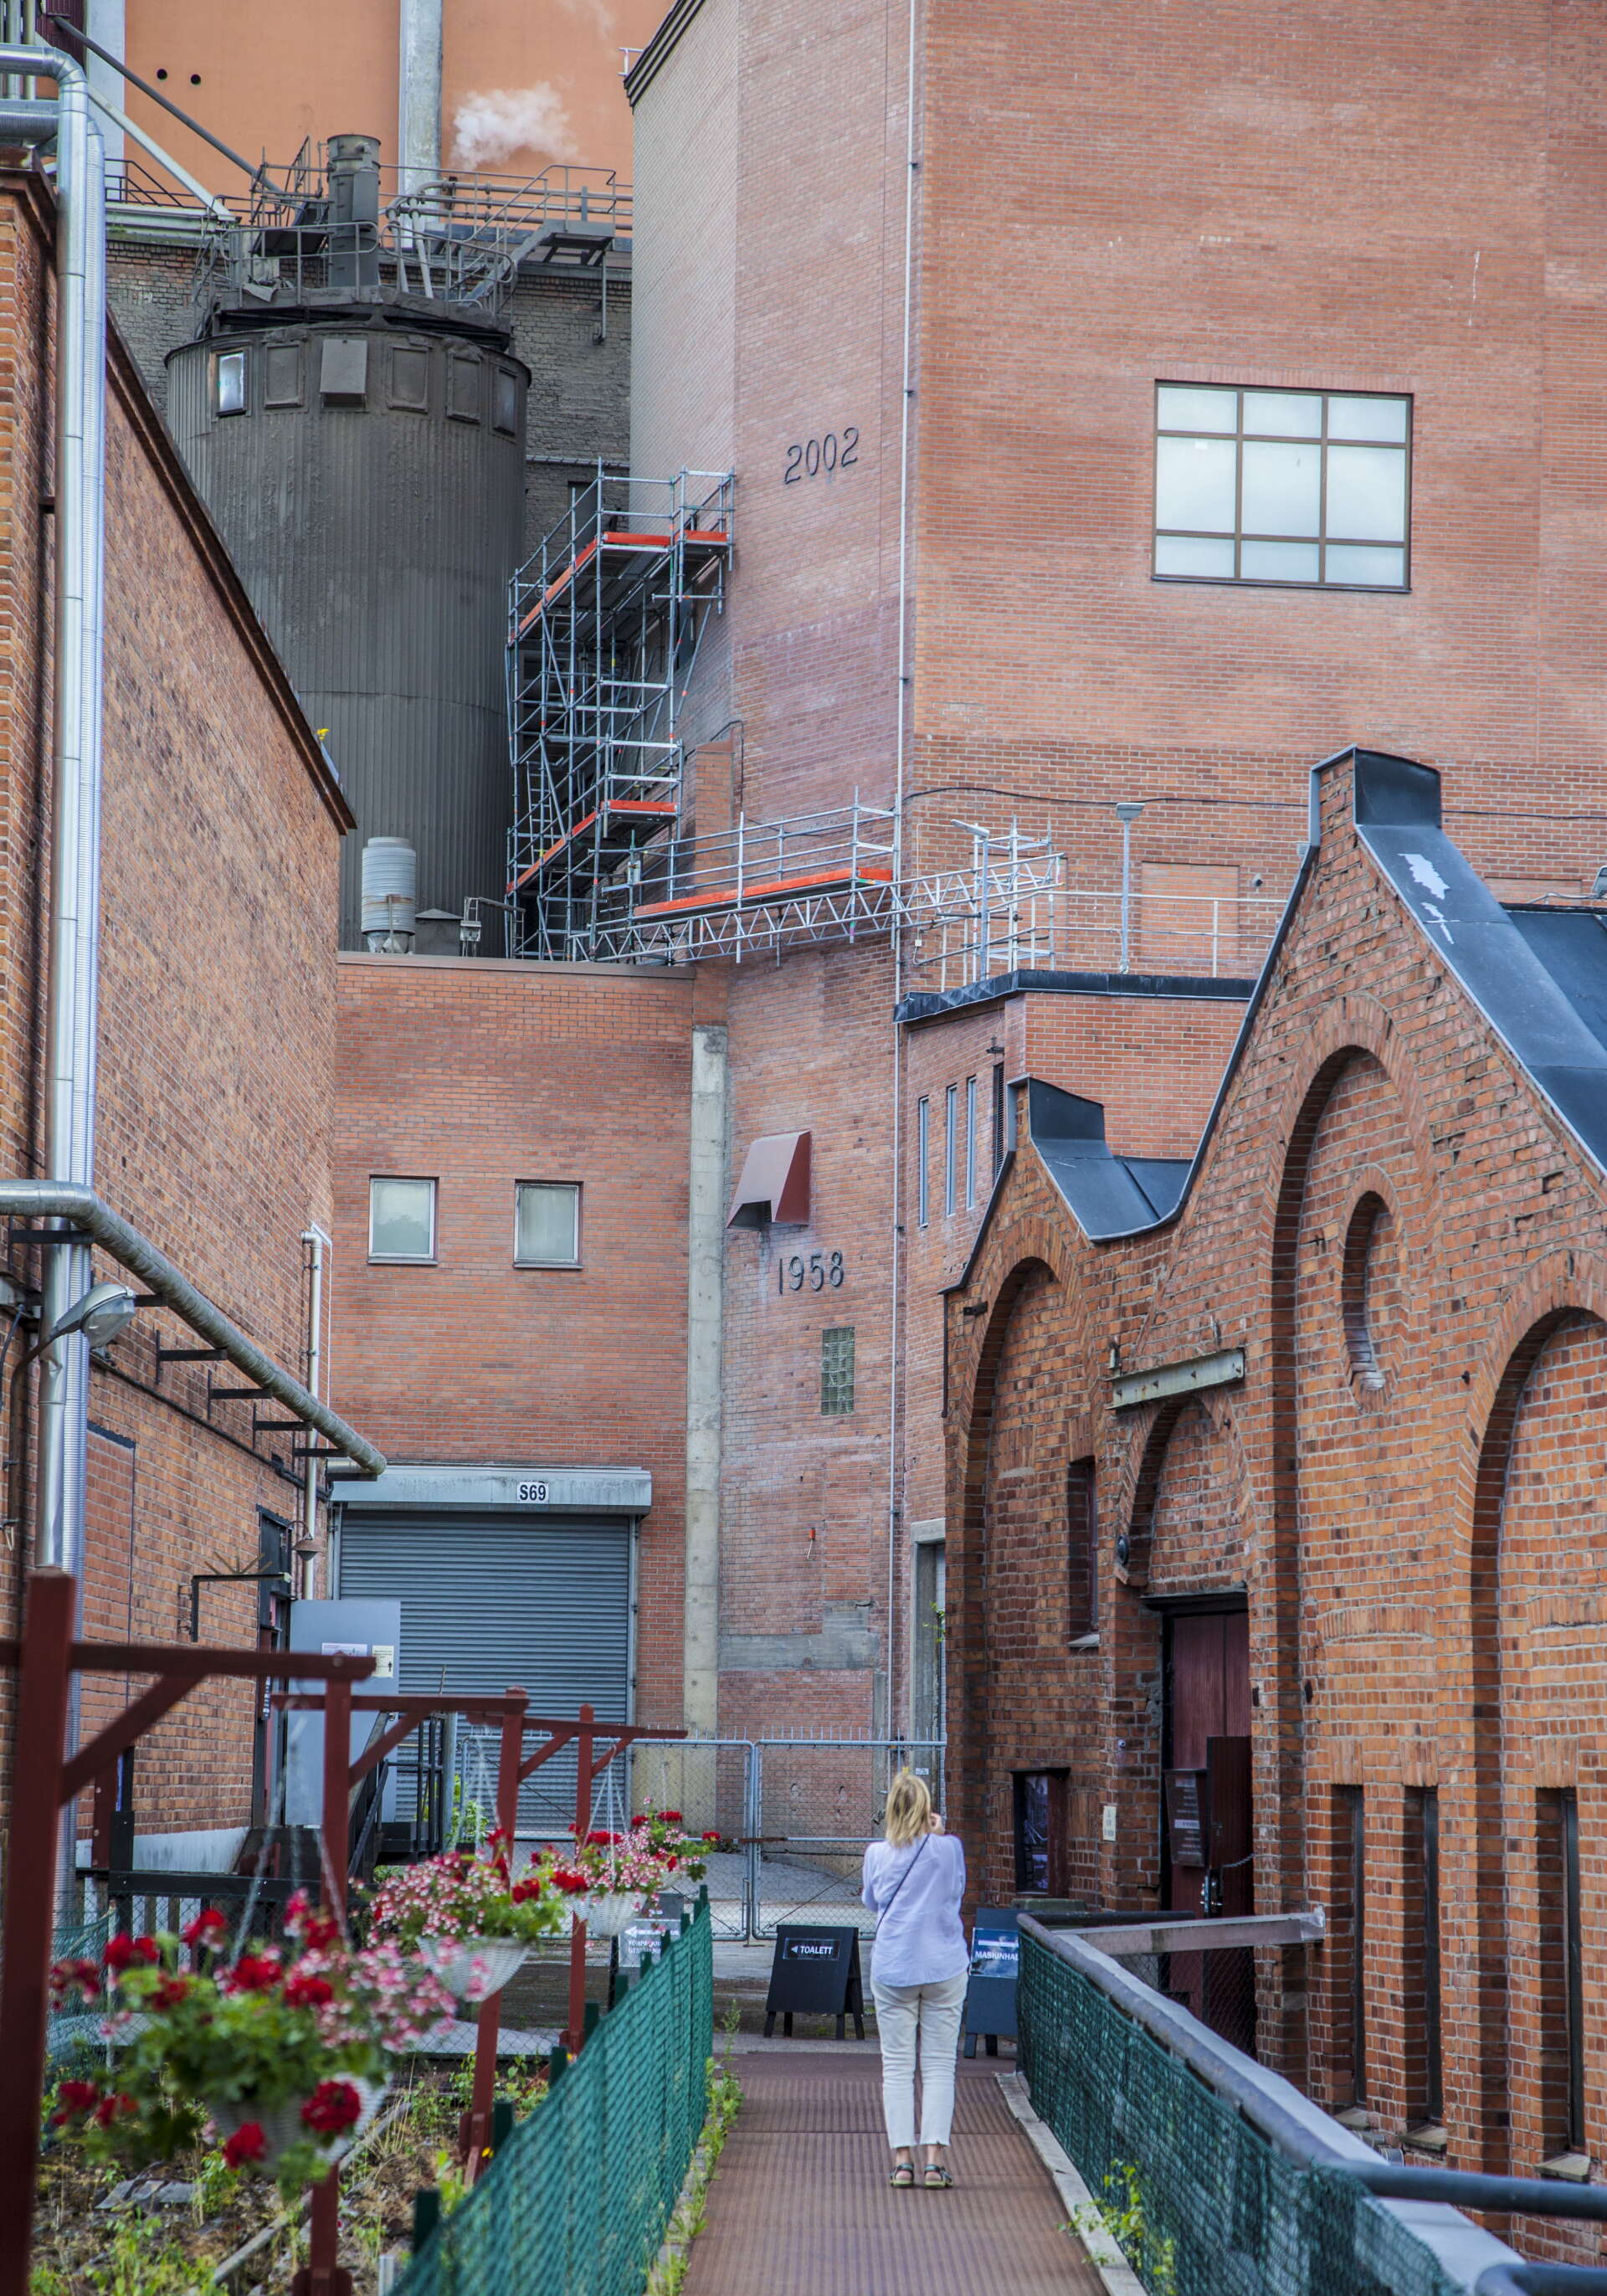 Frövifors pappersbruksmuseum är inrymt i fina gamla tegelbyggnader med det moderna pappersbruket vägg i vägg.